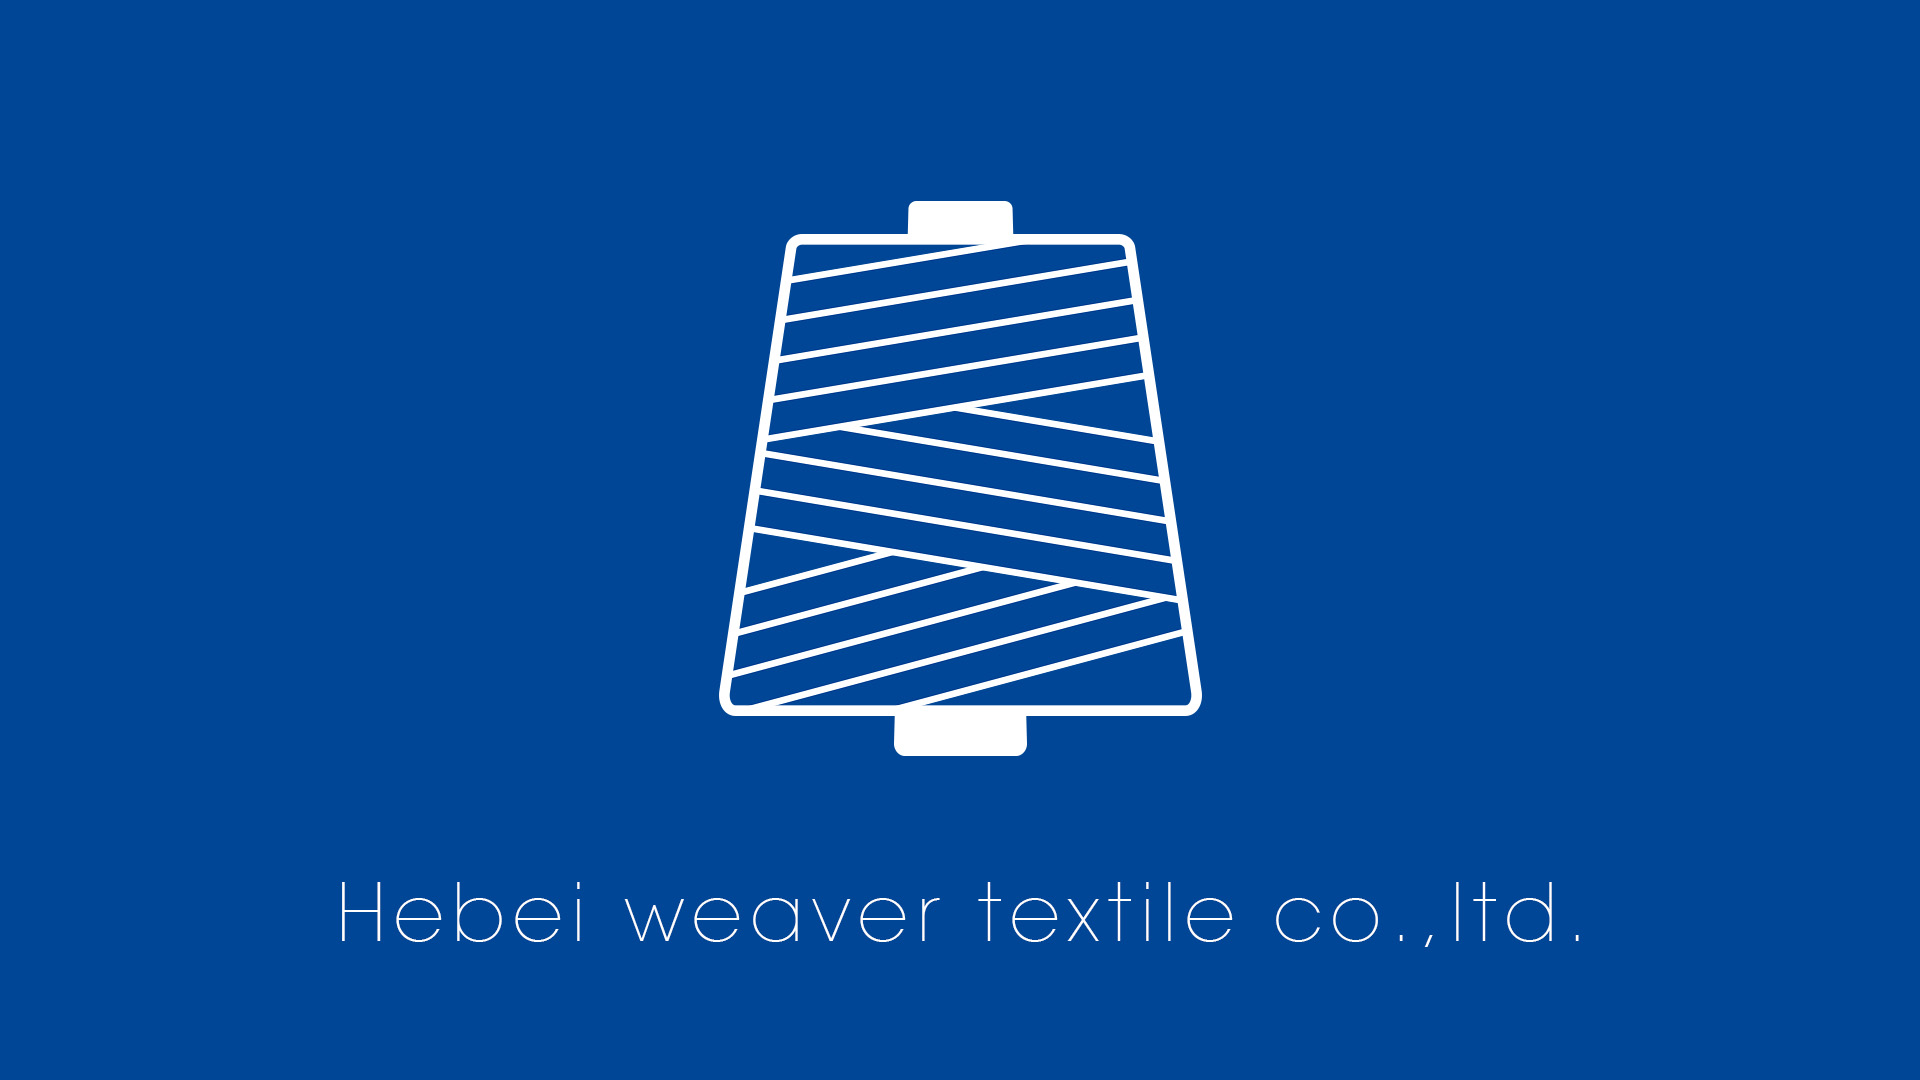 Hebei weaver textile co.,ltd.